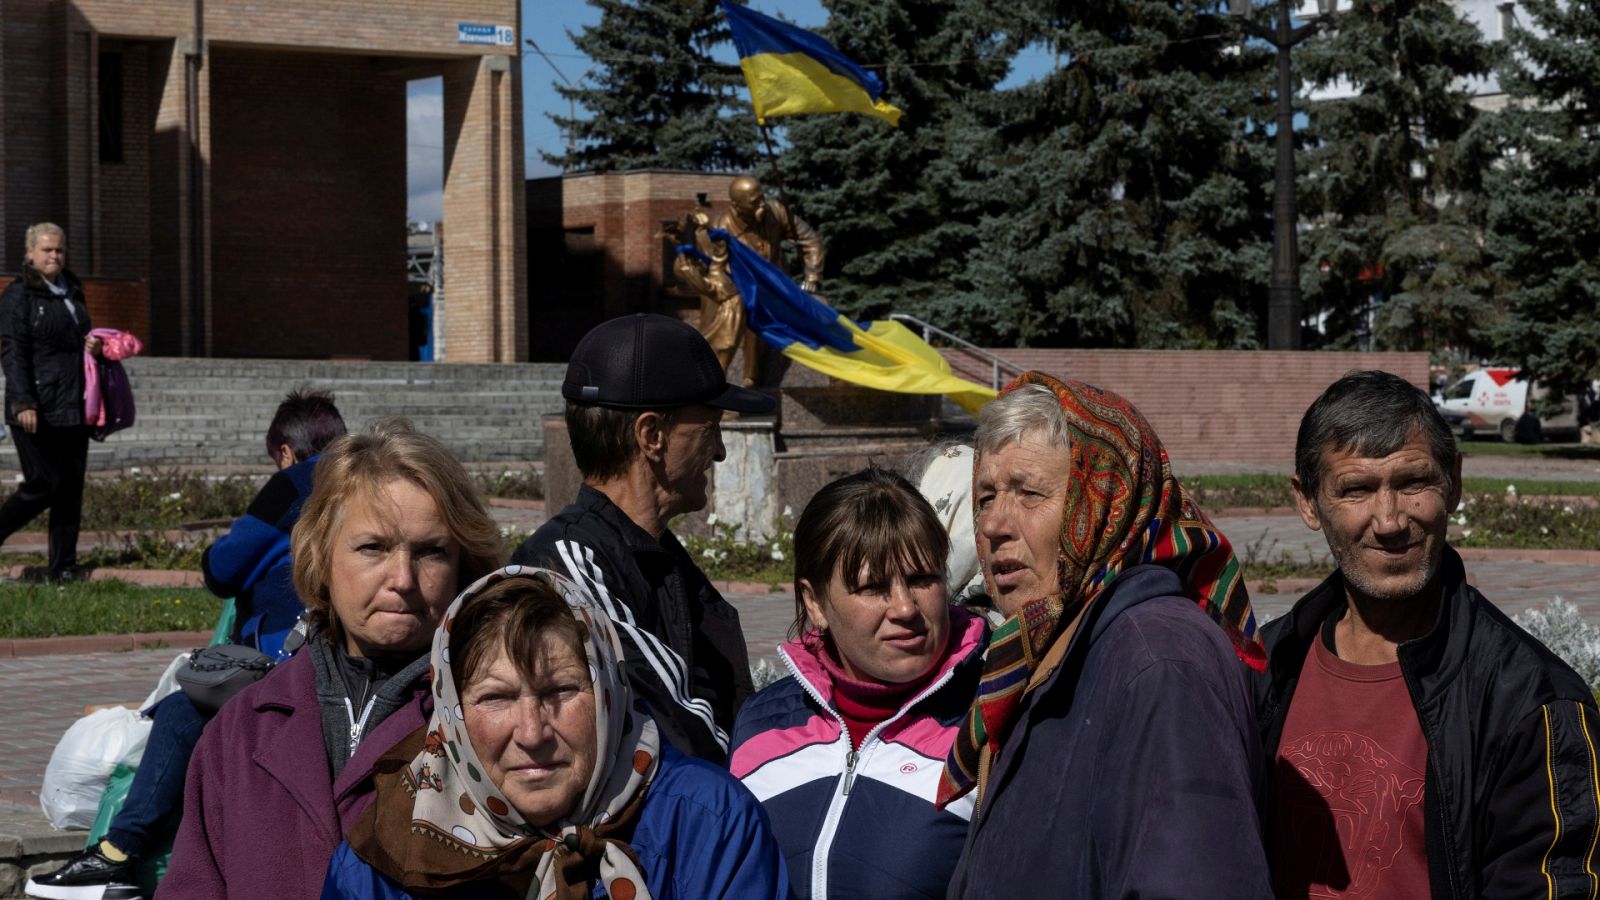 La movilización rusa añade a la población ucraniana "más miedo y preocupación"